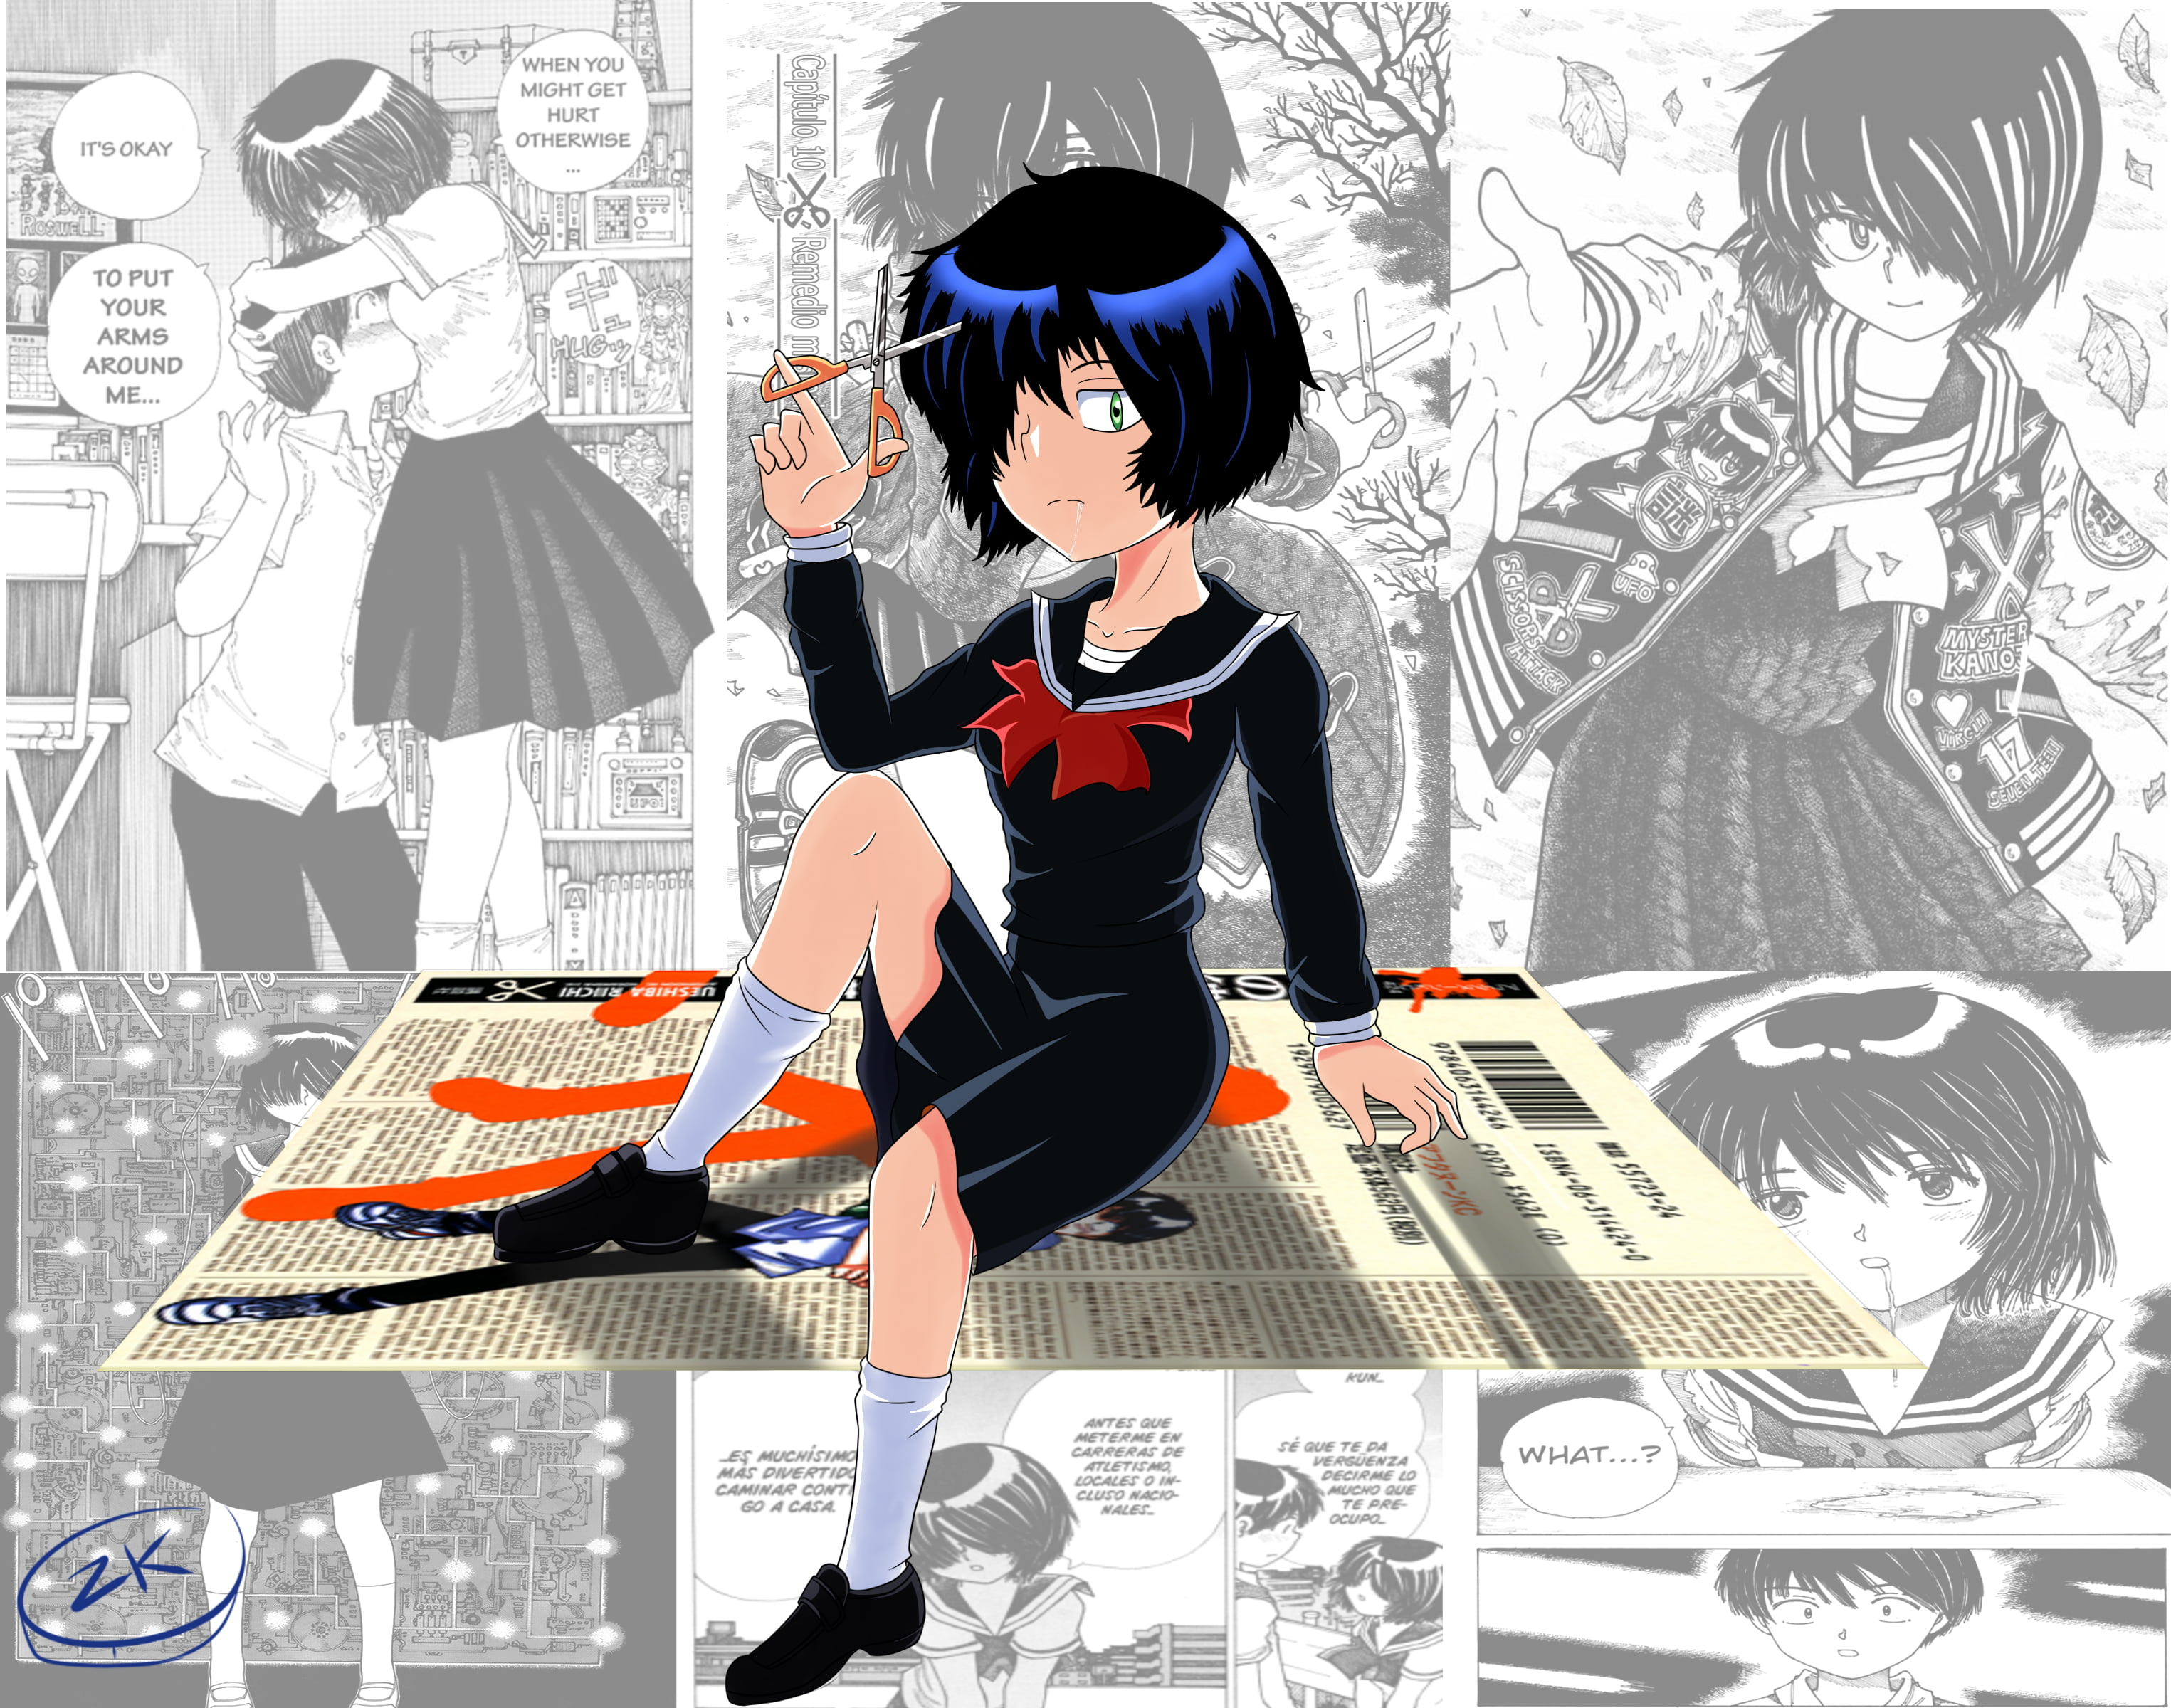 Mysterious Girlfriend X 1080p Wallpaper, Mysterious Girlfriend X Wallpaper, Anime